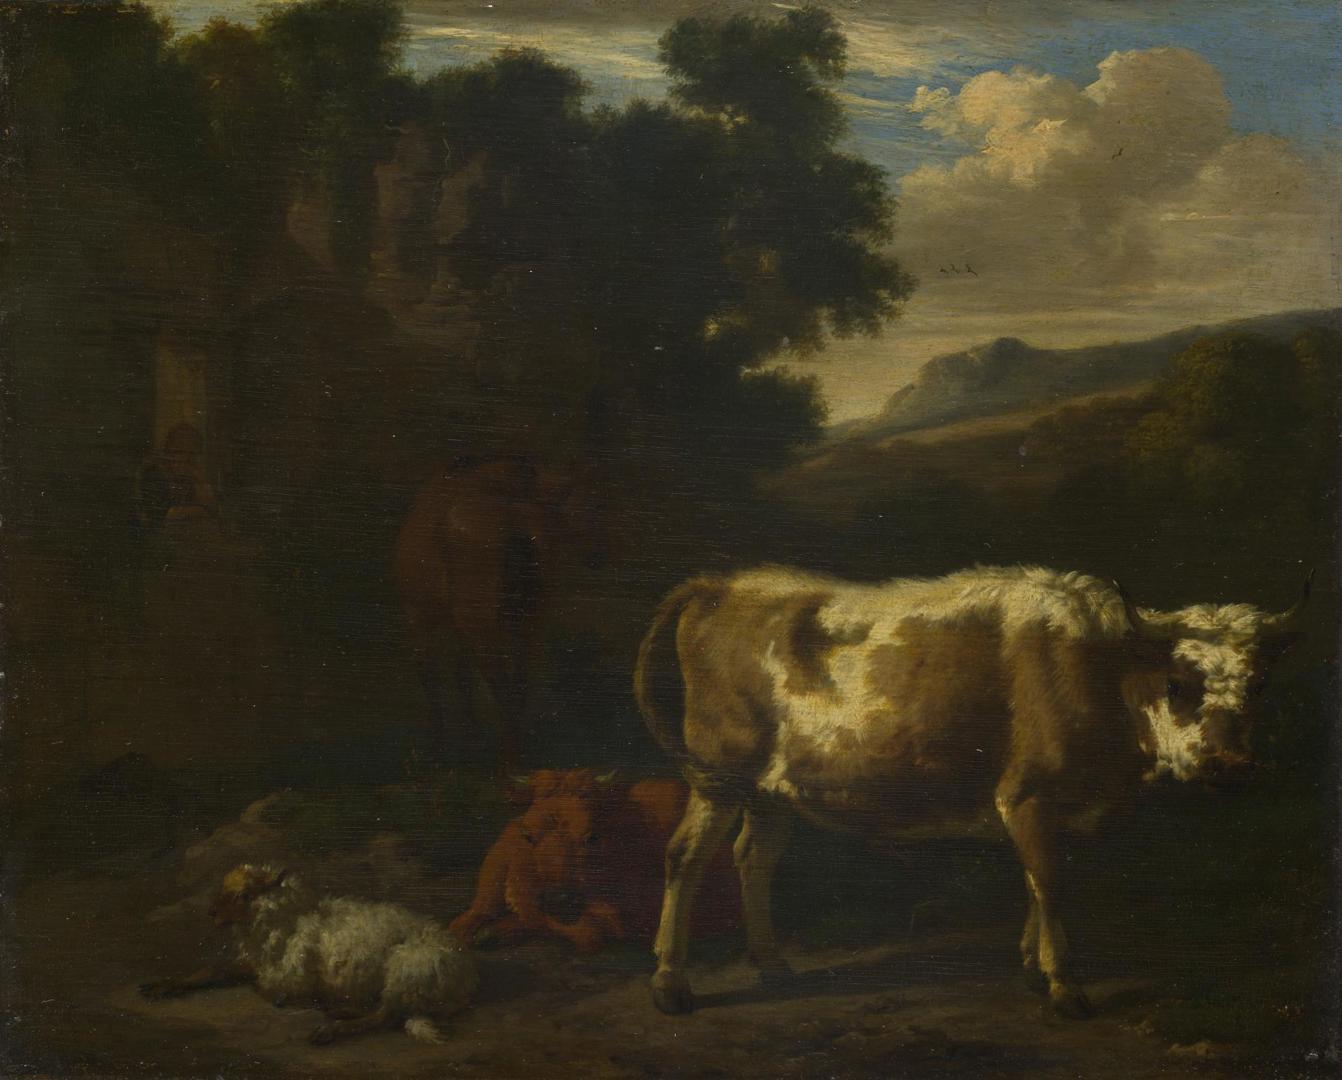 Two Calves, a Sheep and a Dun Horse by a Ruin by Dirck van den Bergen